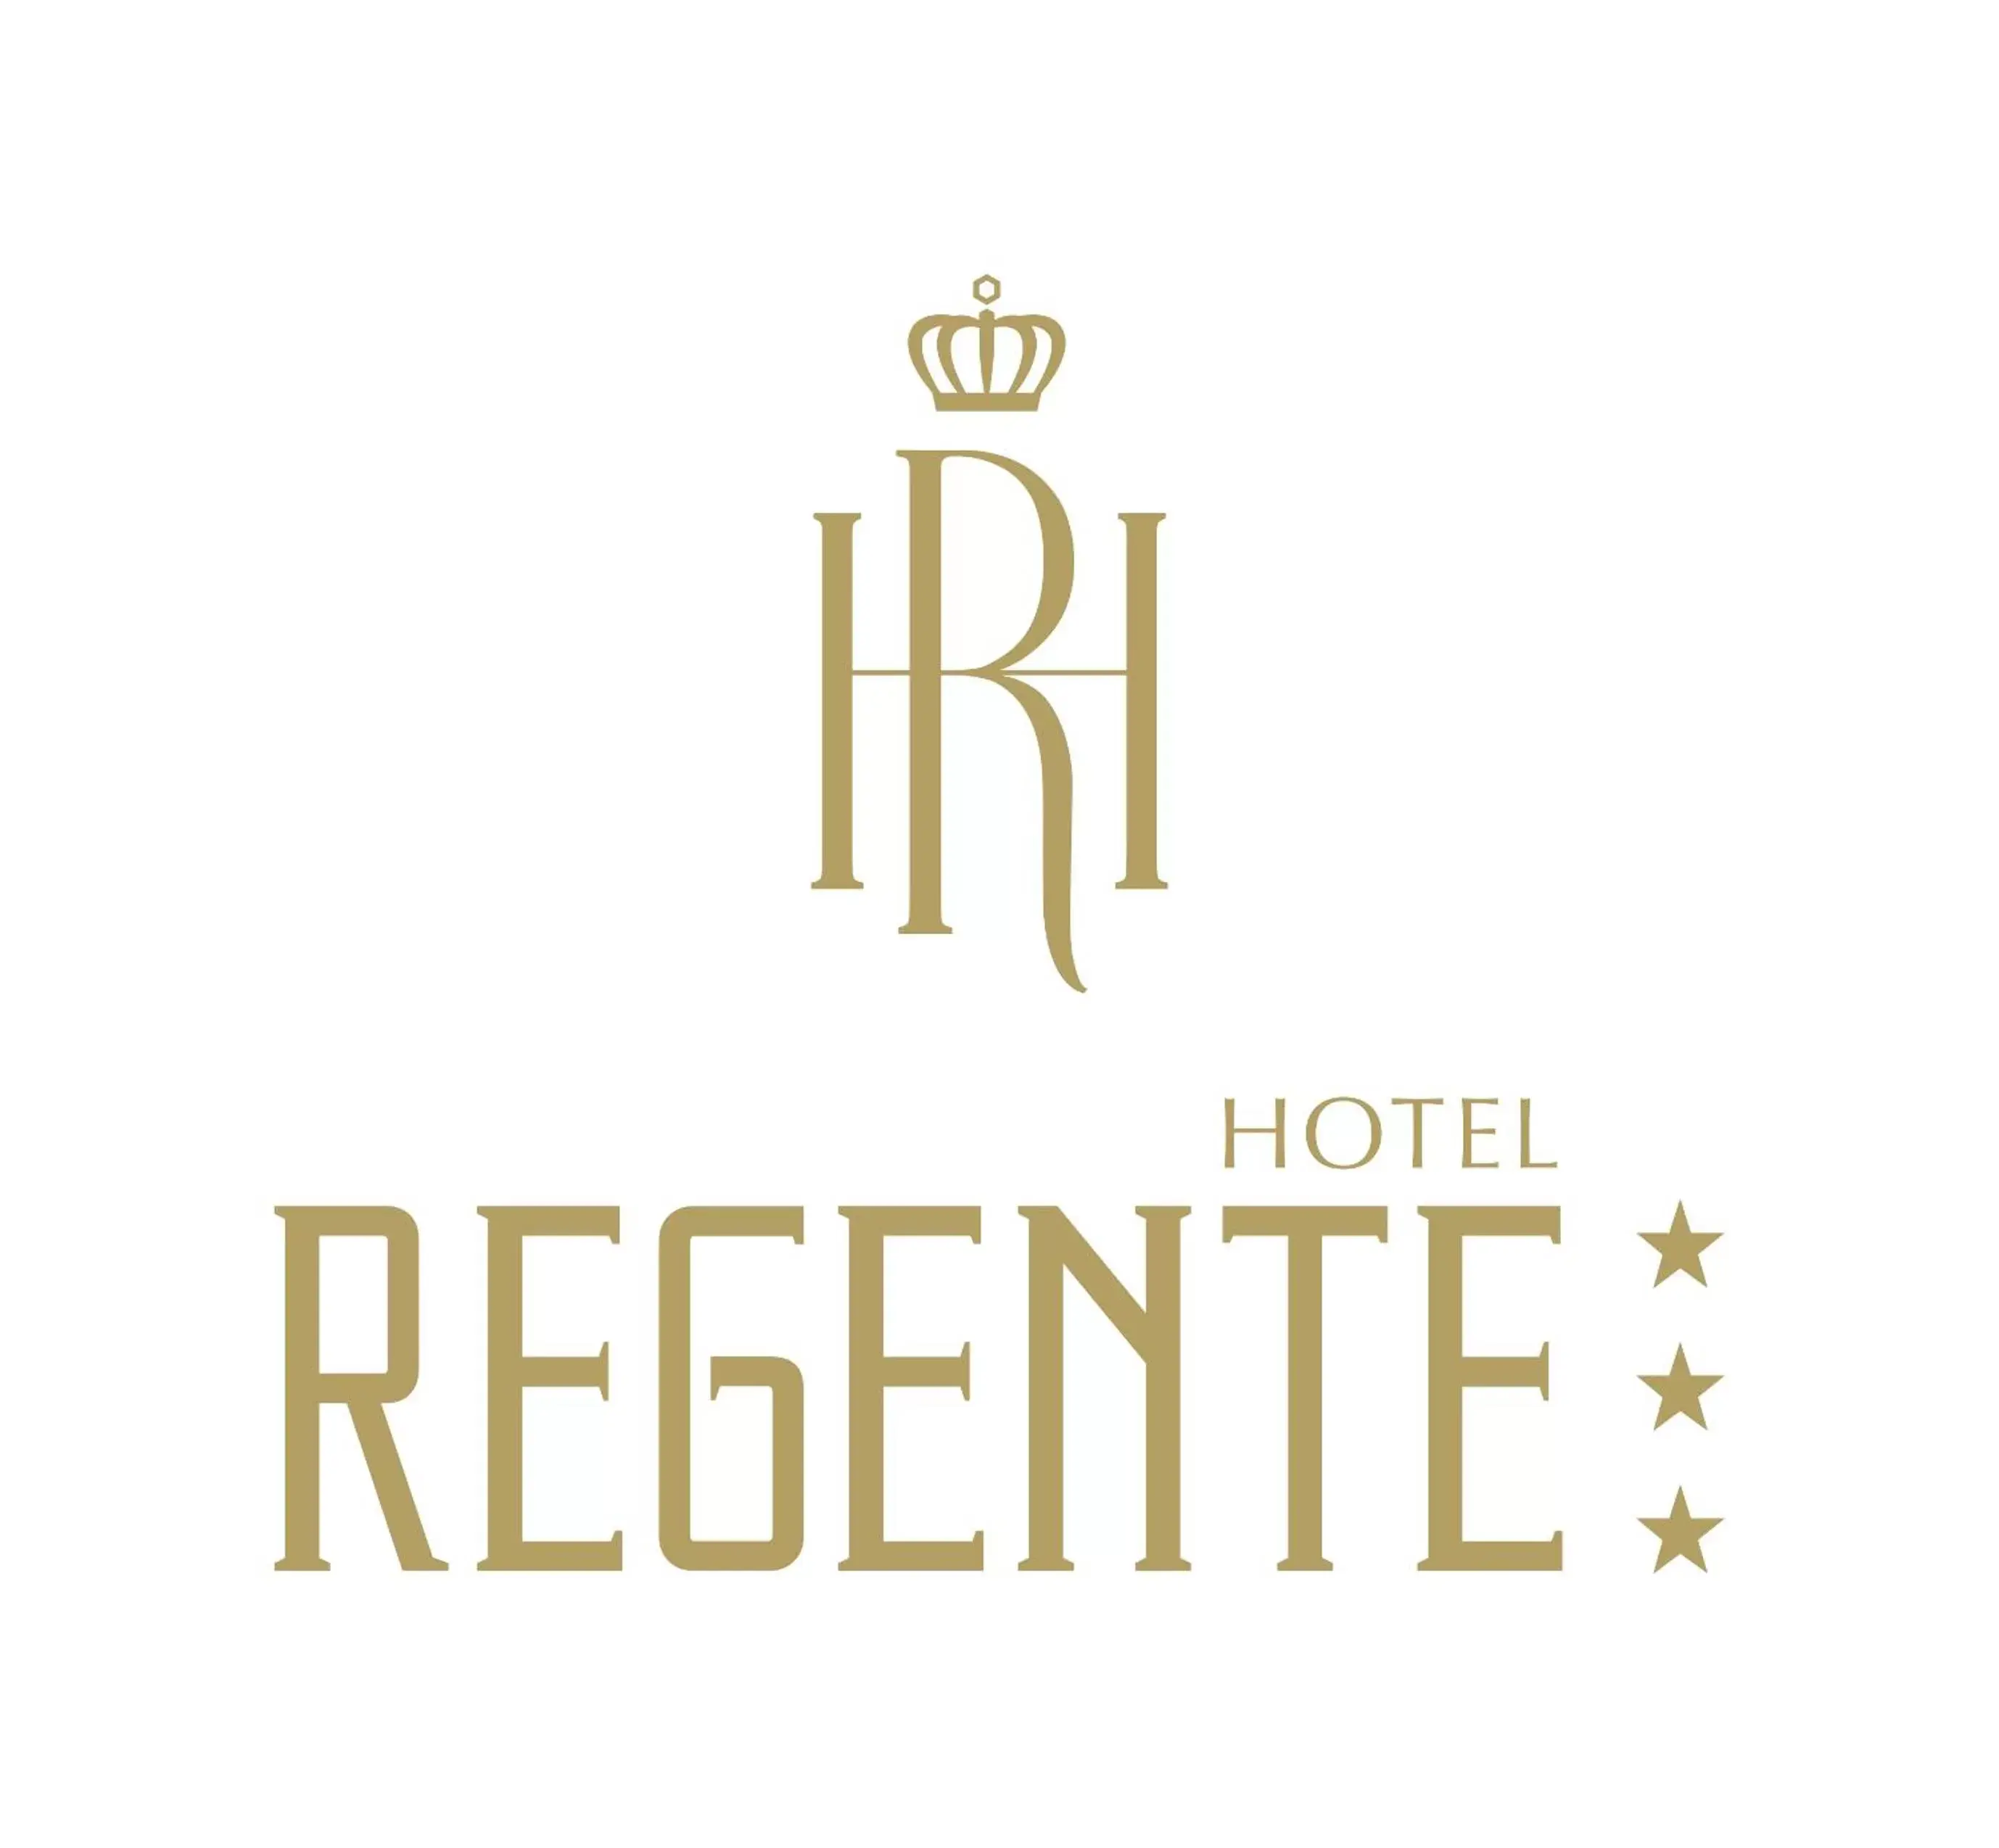 Property logo or sign, Logo/Certificate/Sign/Award in Regente Hotel